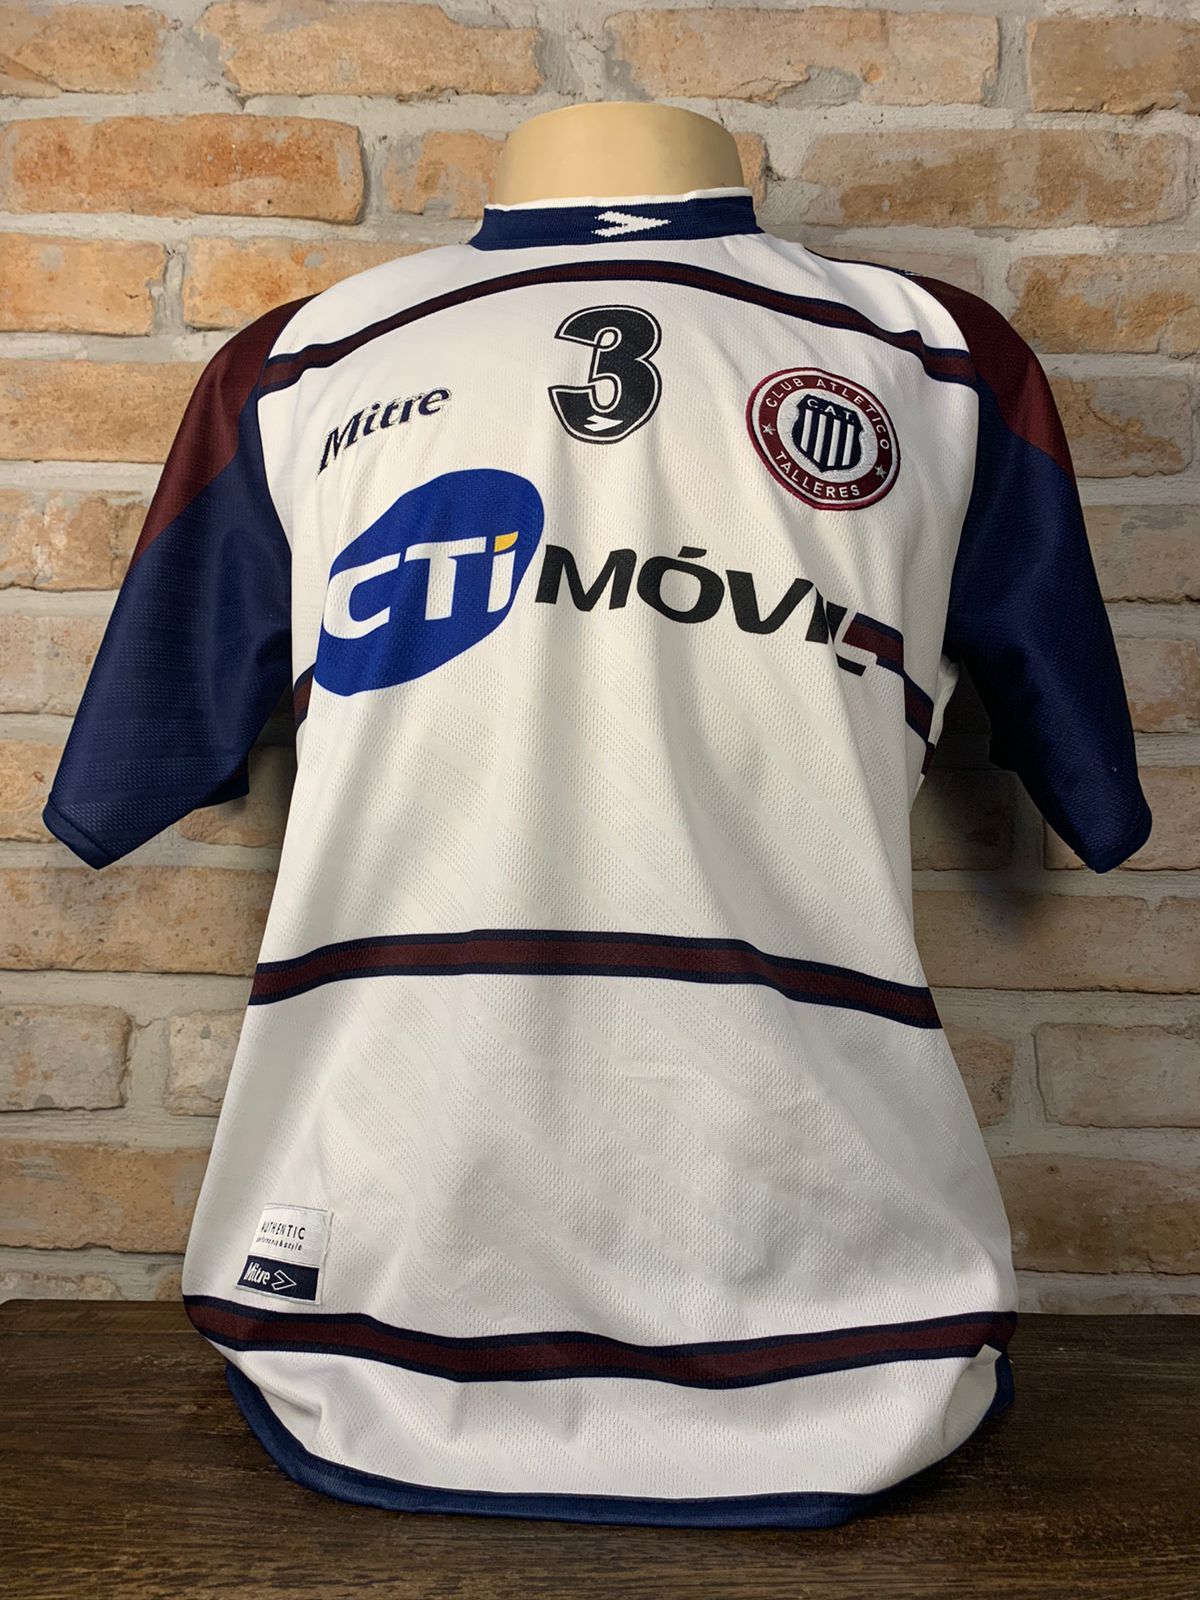 Camisa Club Atlético Independiente autografada pelo Victor Cuesta